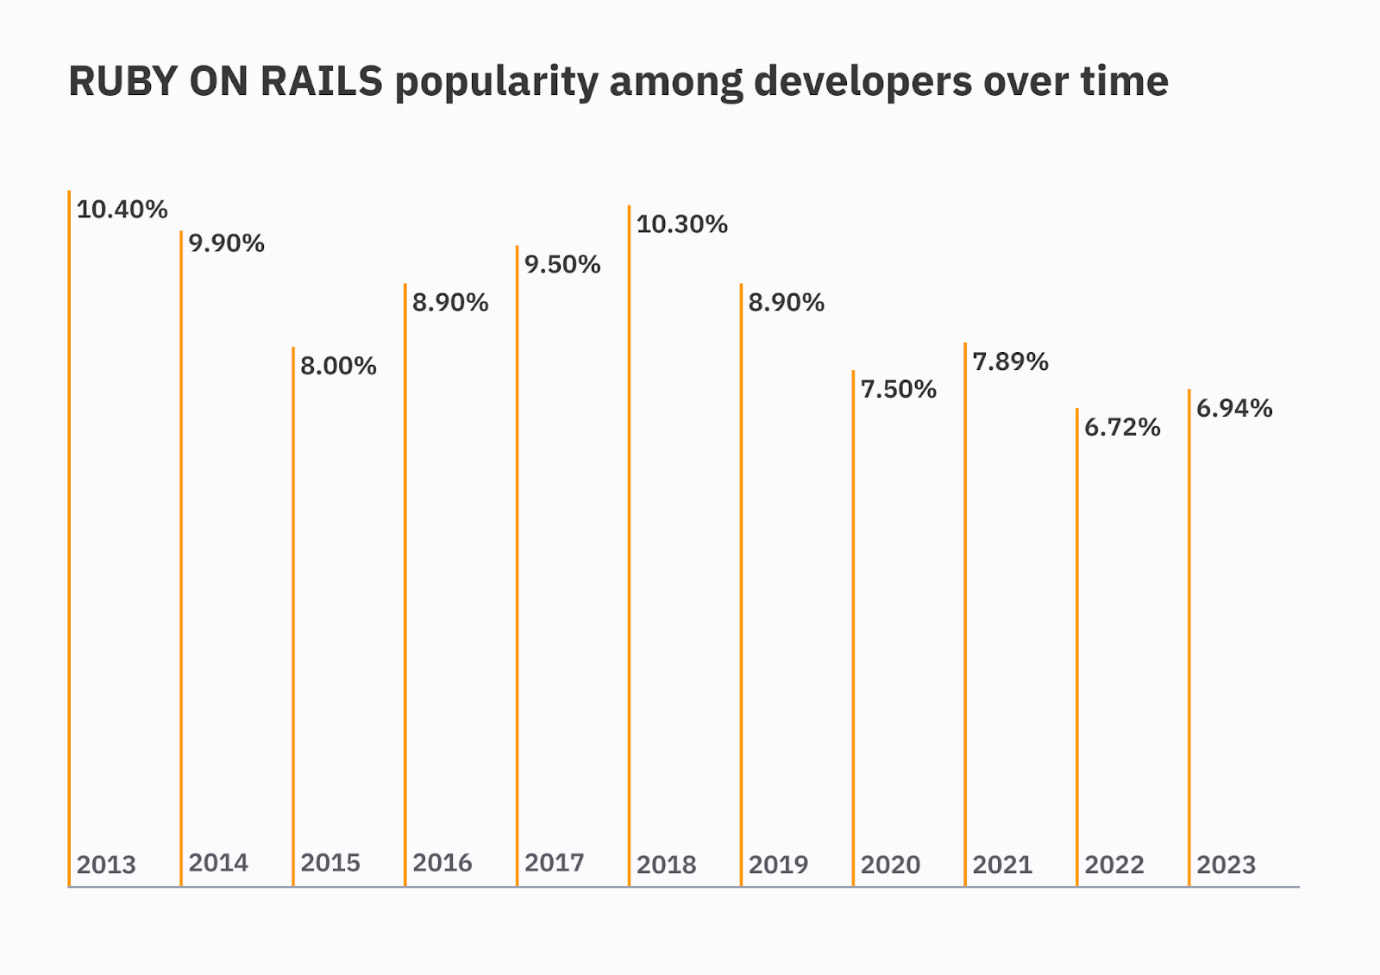 source: Stack overflow developer survey